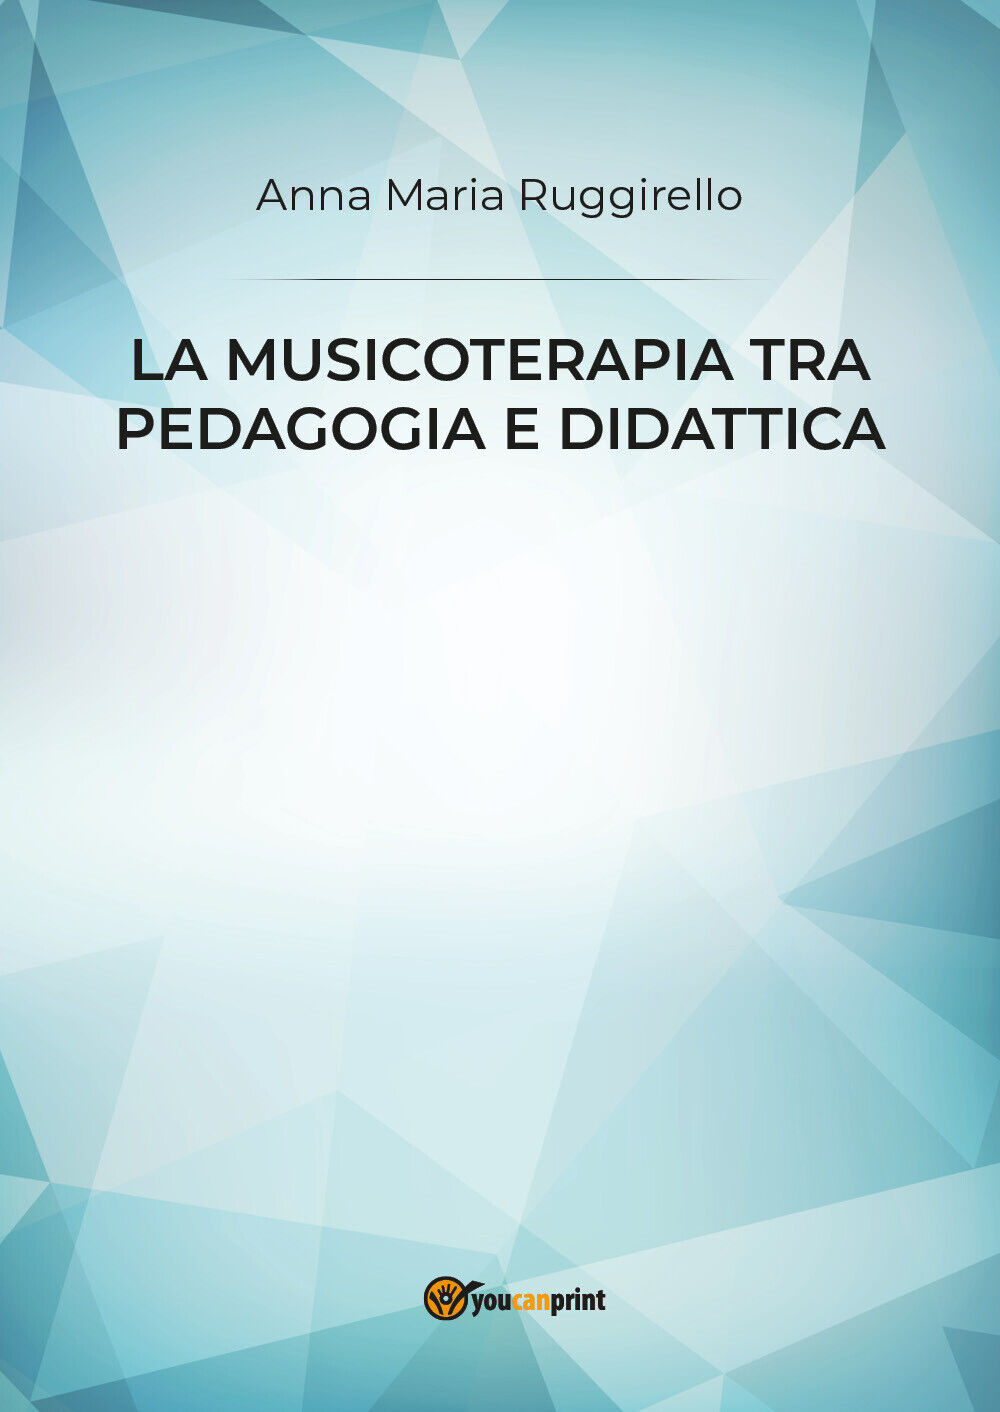 La musicoterapia tra pedagogia e didattica di Anna Maria Ruggirello,  2019,  You